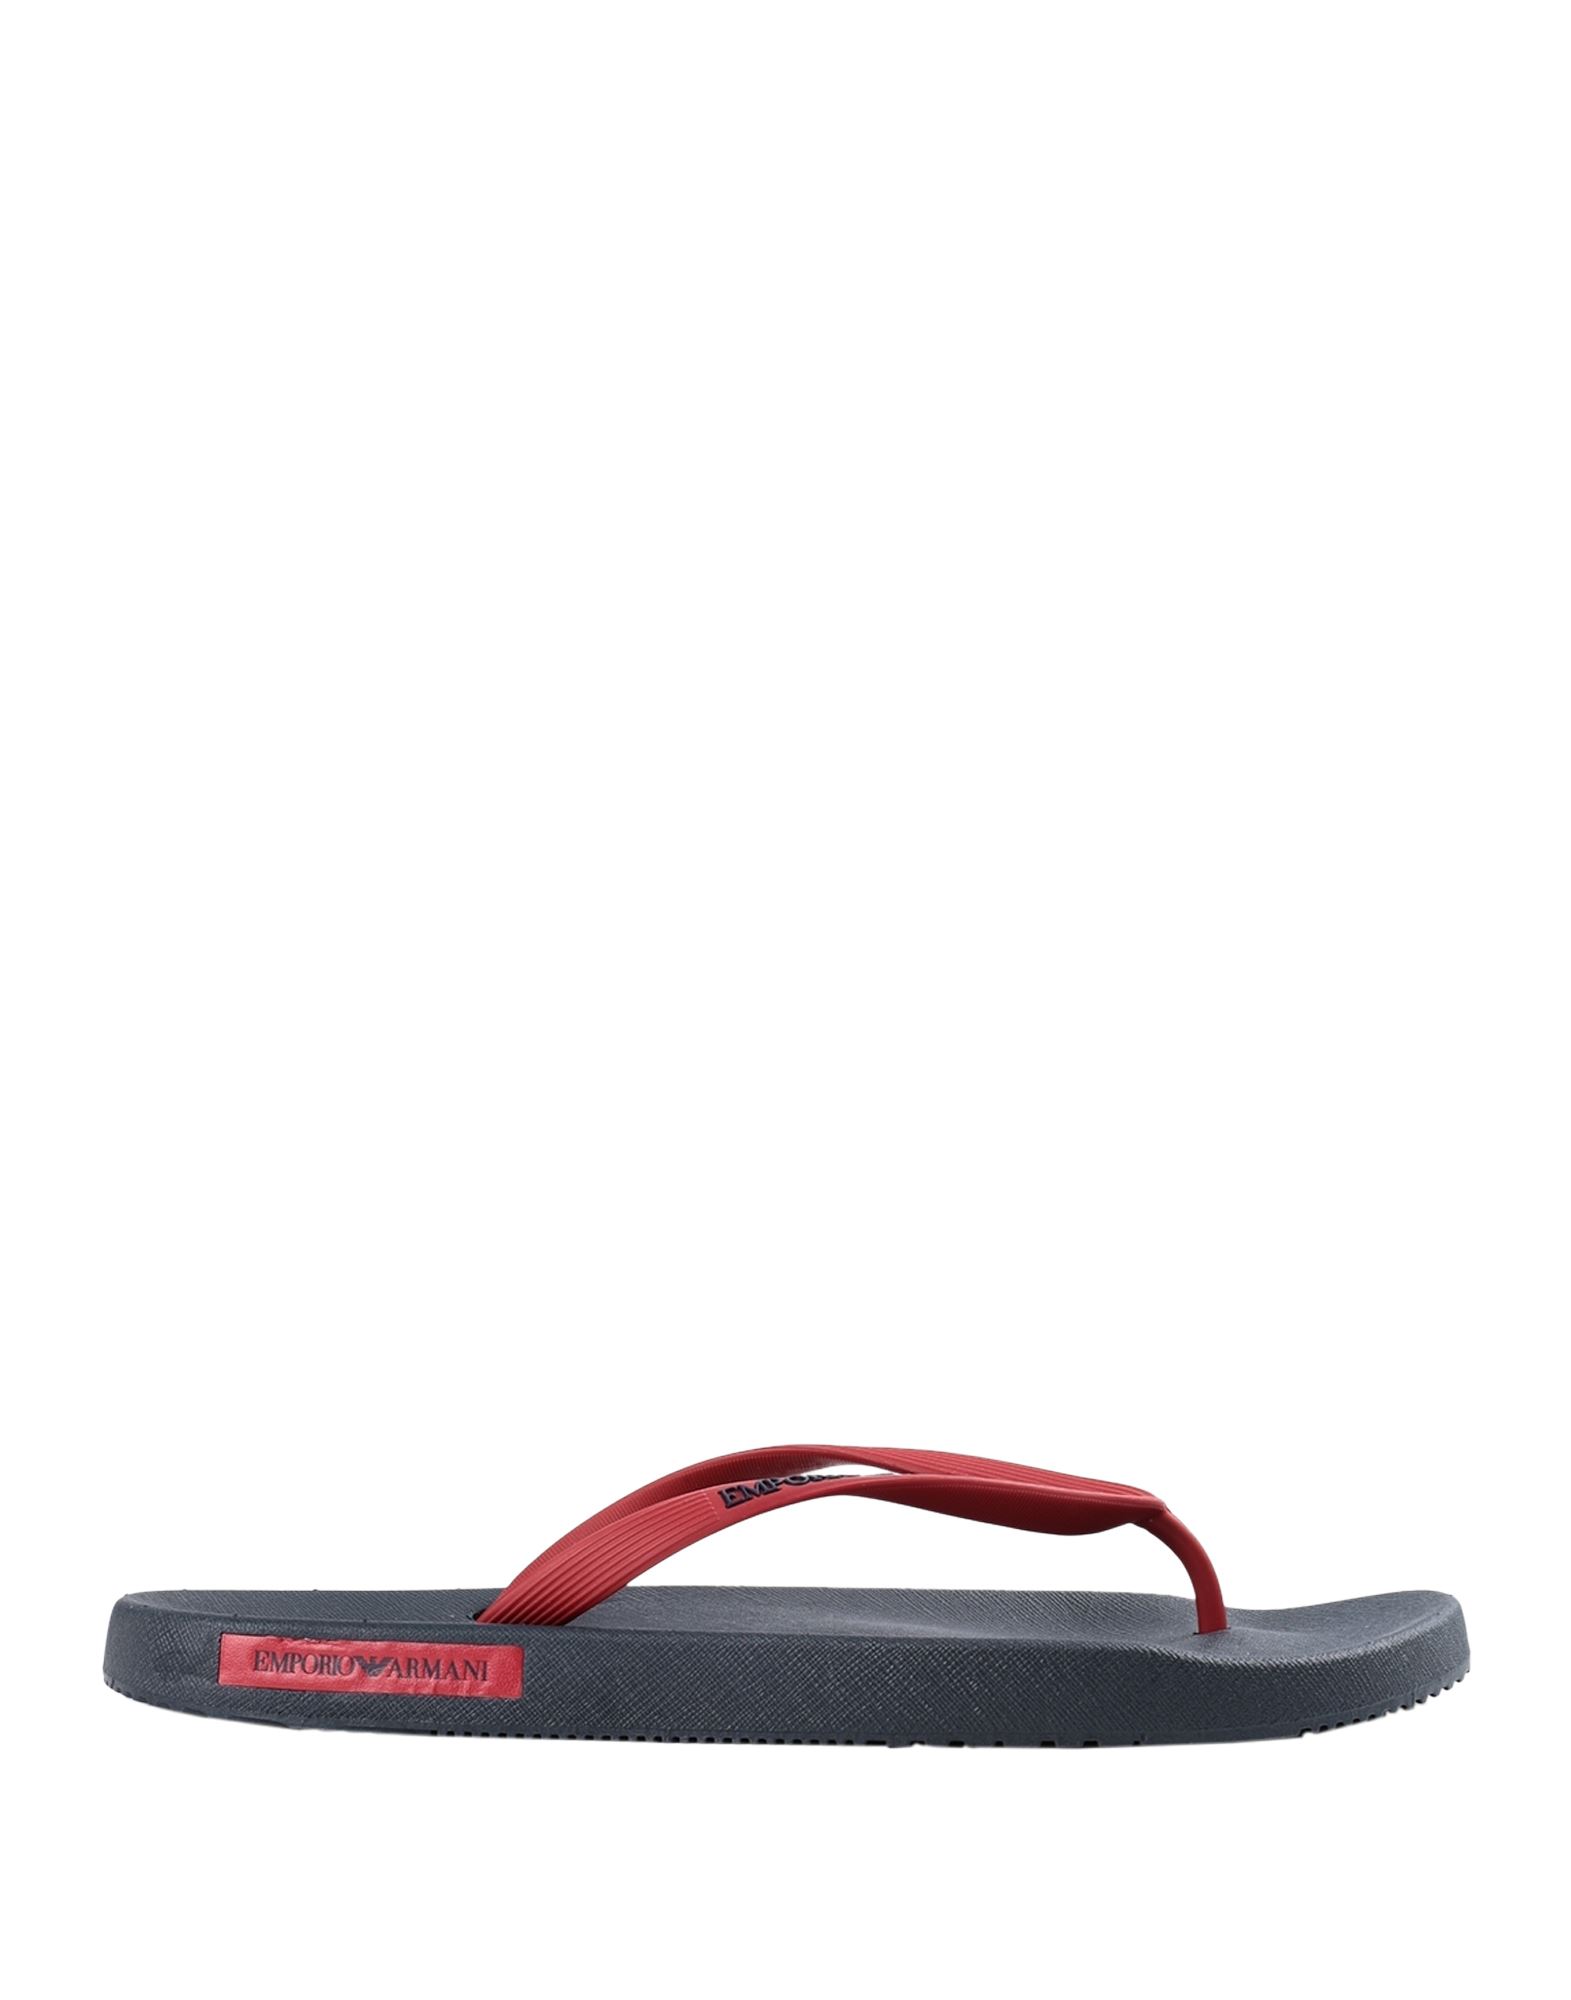 Emporio Armani Toe Strap Sandals In Brick Red